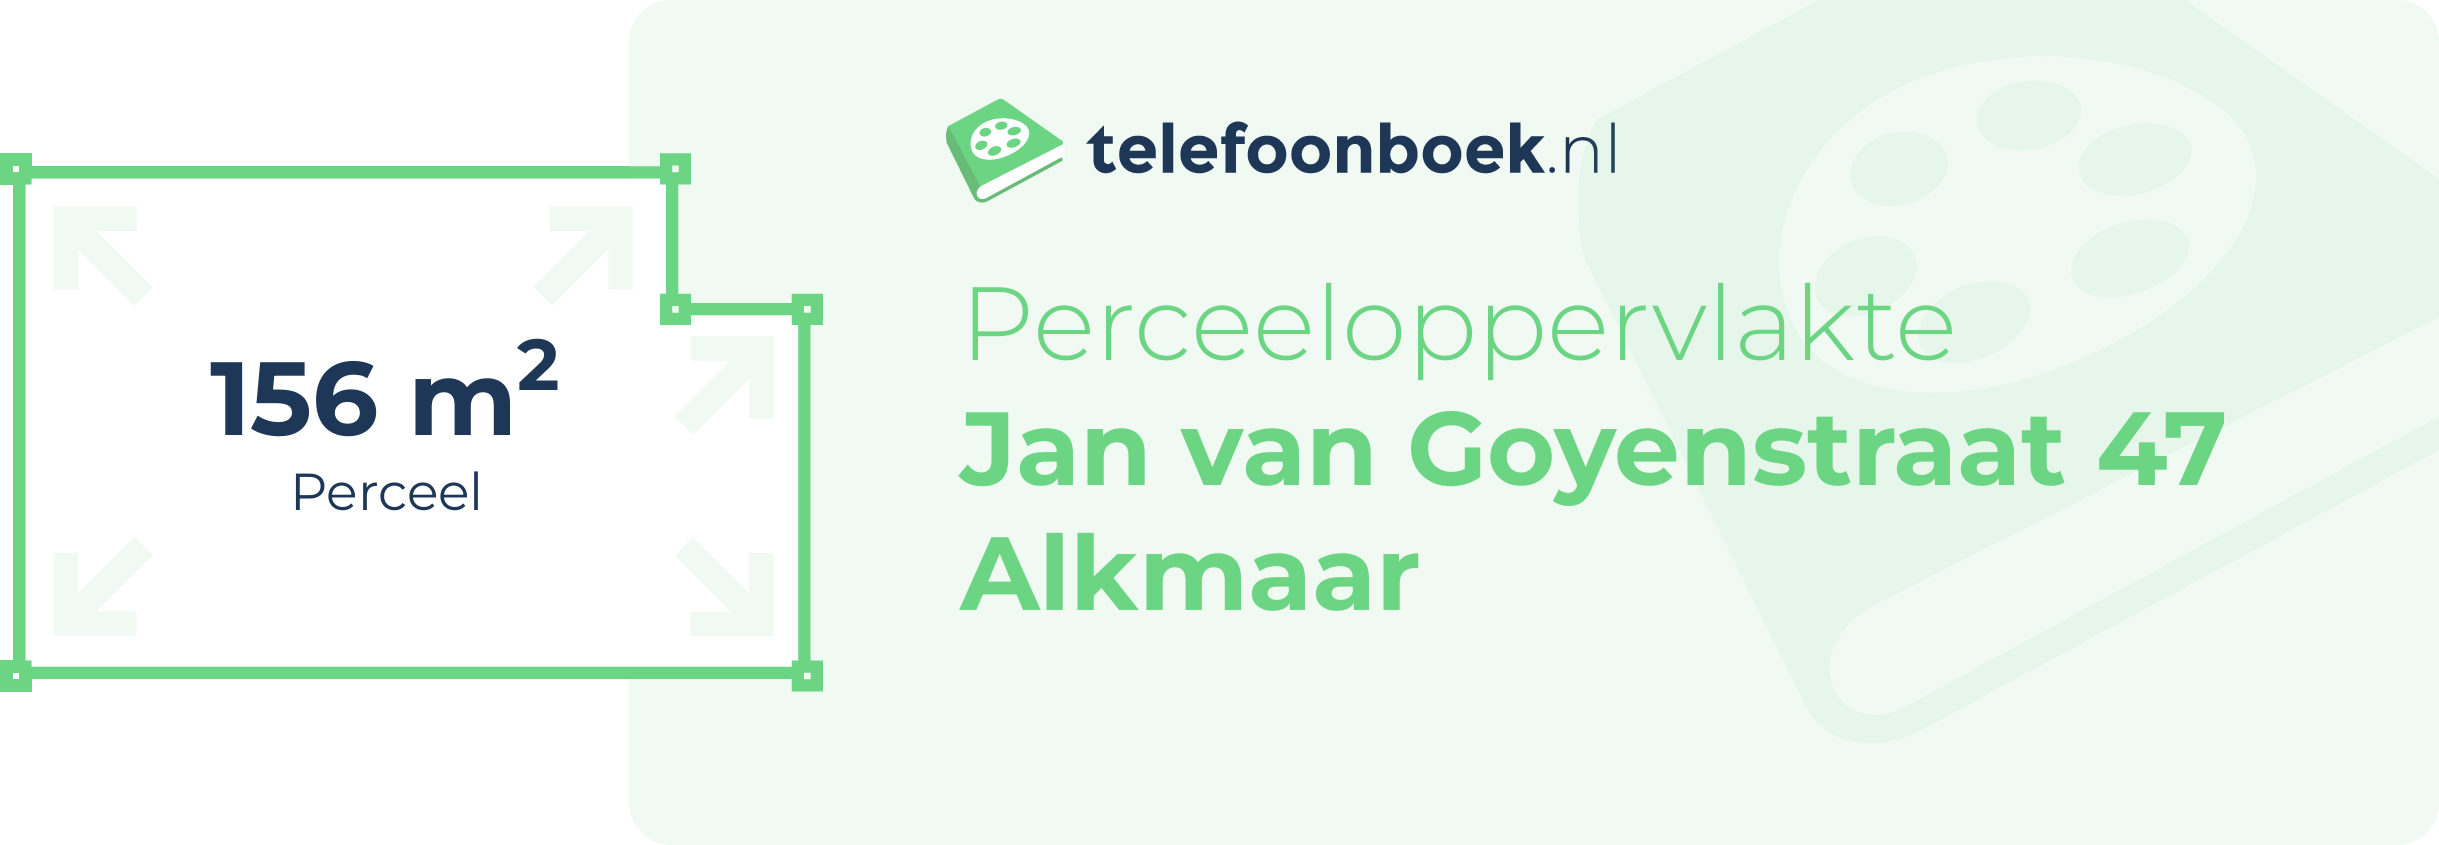 Perceeloppervlakte Jan Van Goyenstraat 47 Alkmaar